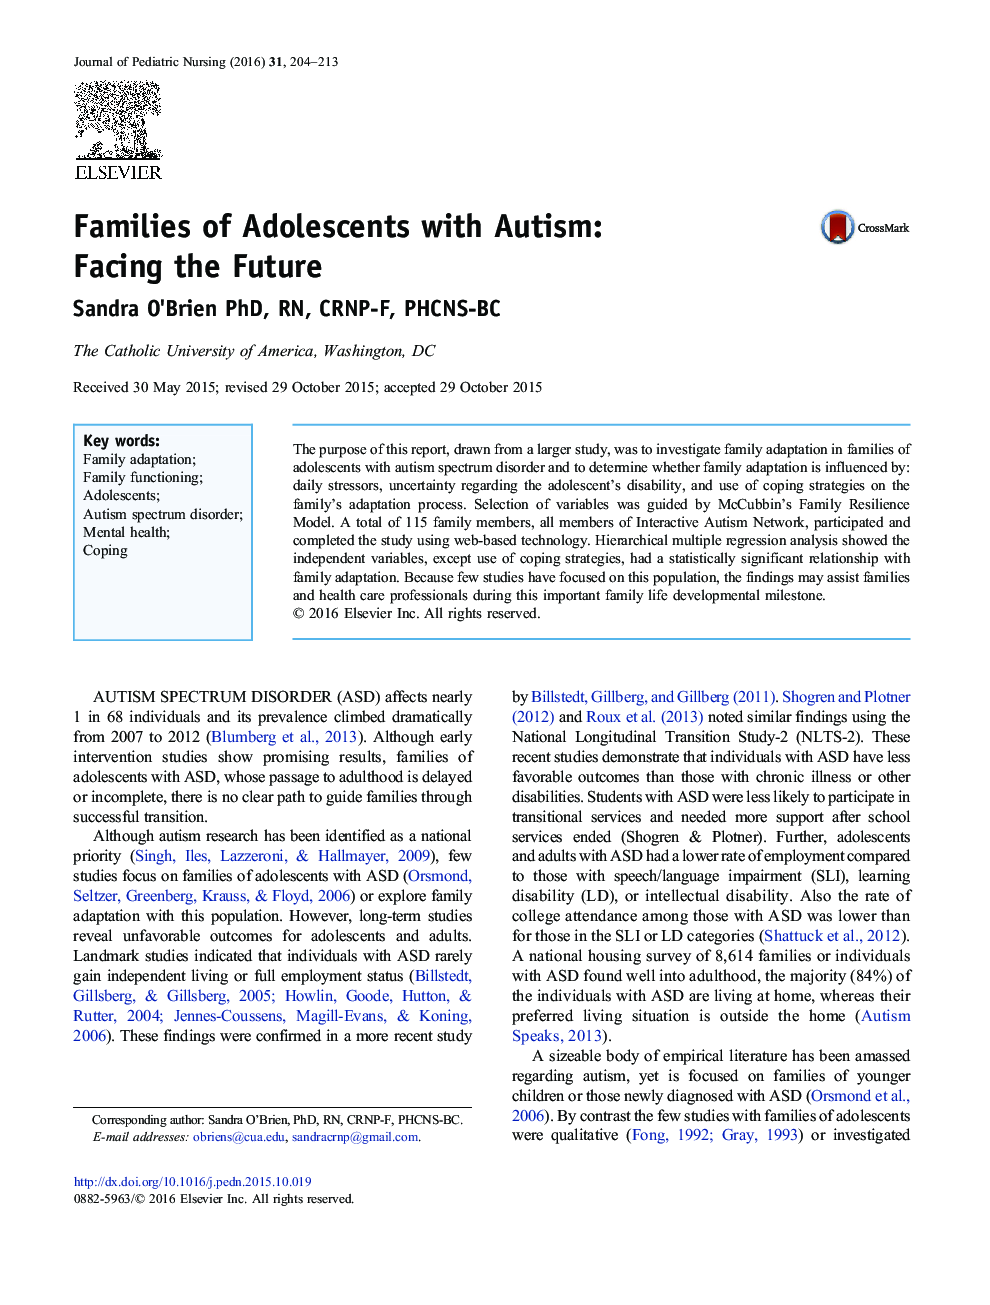 خانواده های نوجوانان مبتلا به اوتیسم: در مواجهه با آینده